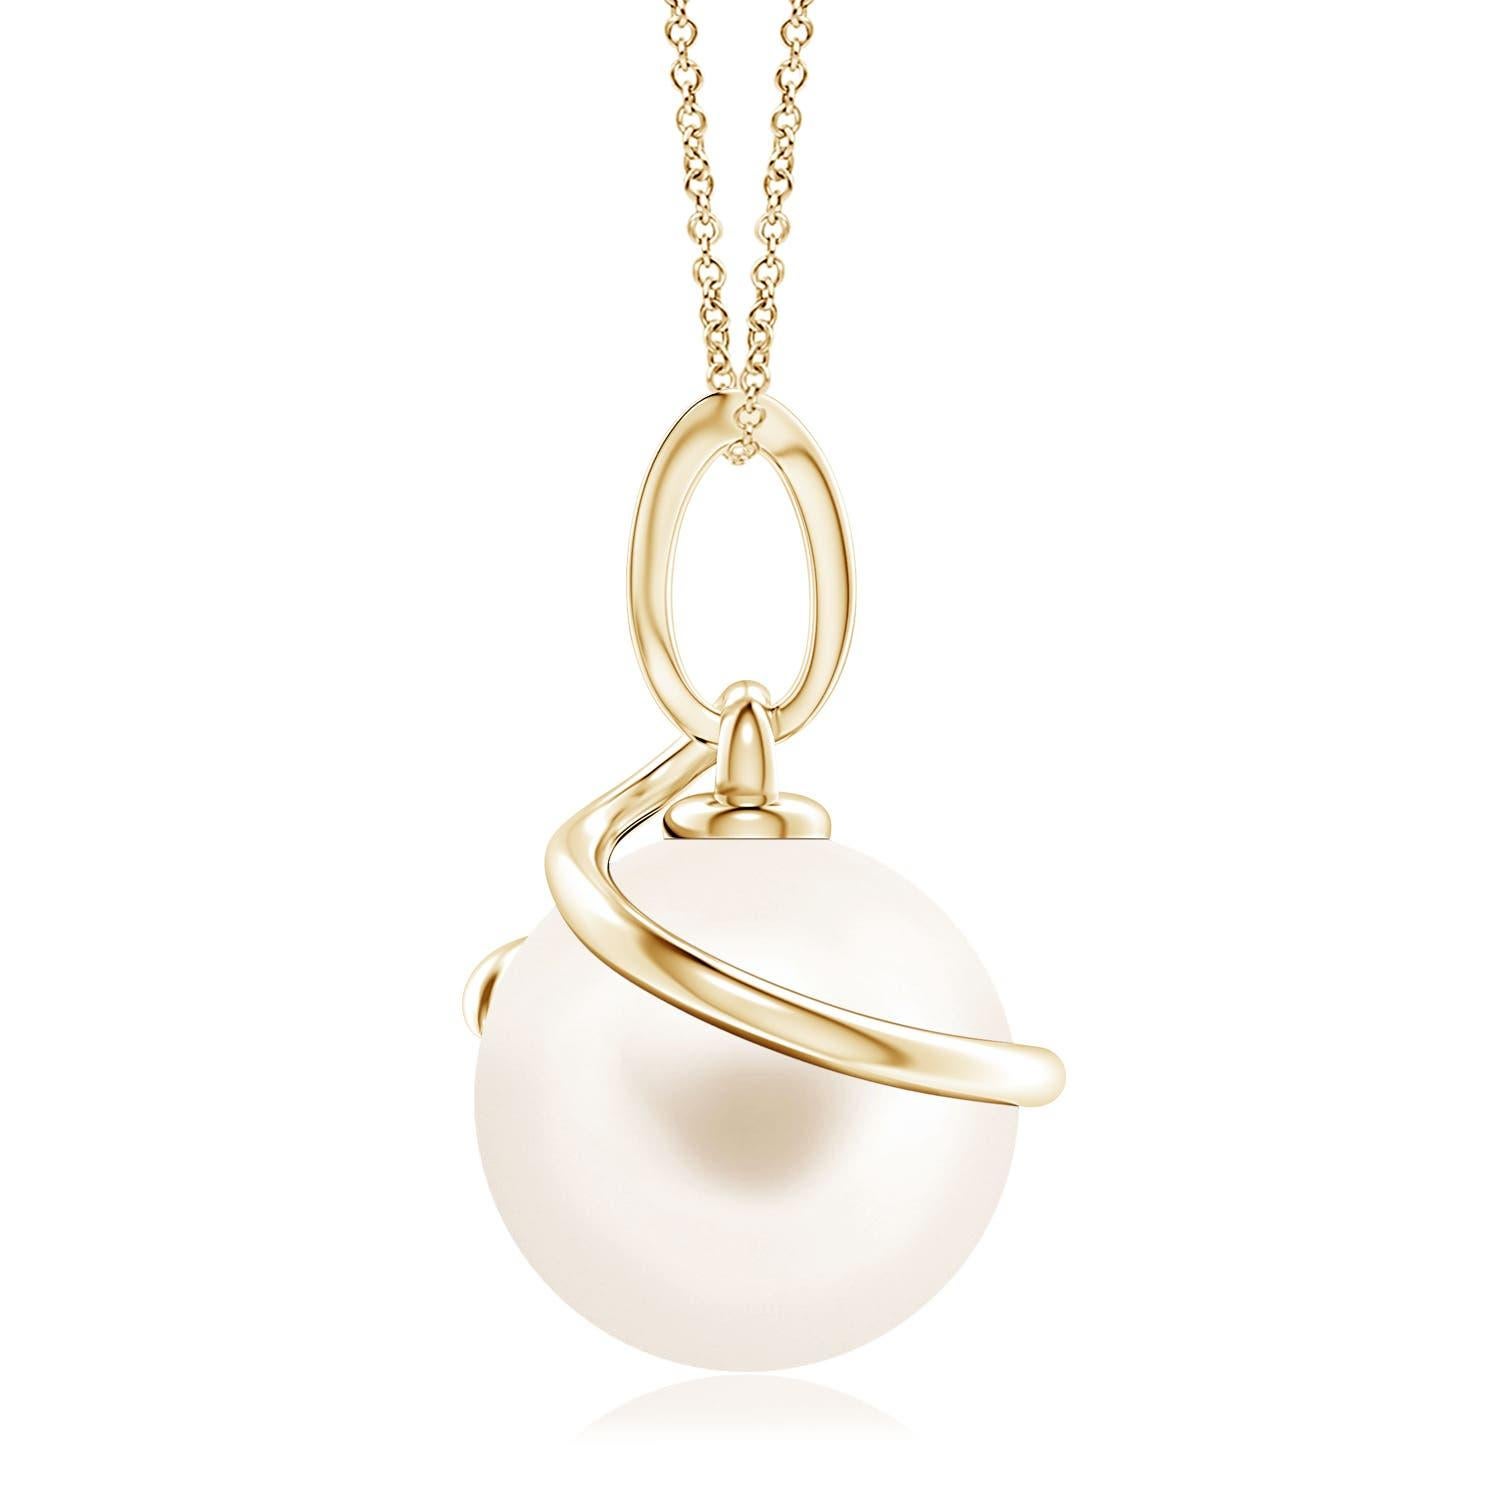 Donnez une touche d'élégance à vos looks avec ce pendentif en perles de culture d'eau douce, réalisé en or jaune 14k. La magnifique perle est entourée d'une boucle métallique en spirale et reliée à une balle sertie de diamants.
La perle de culture